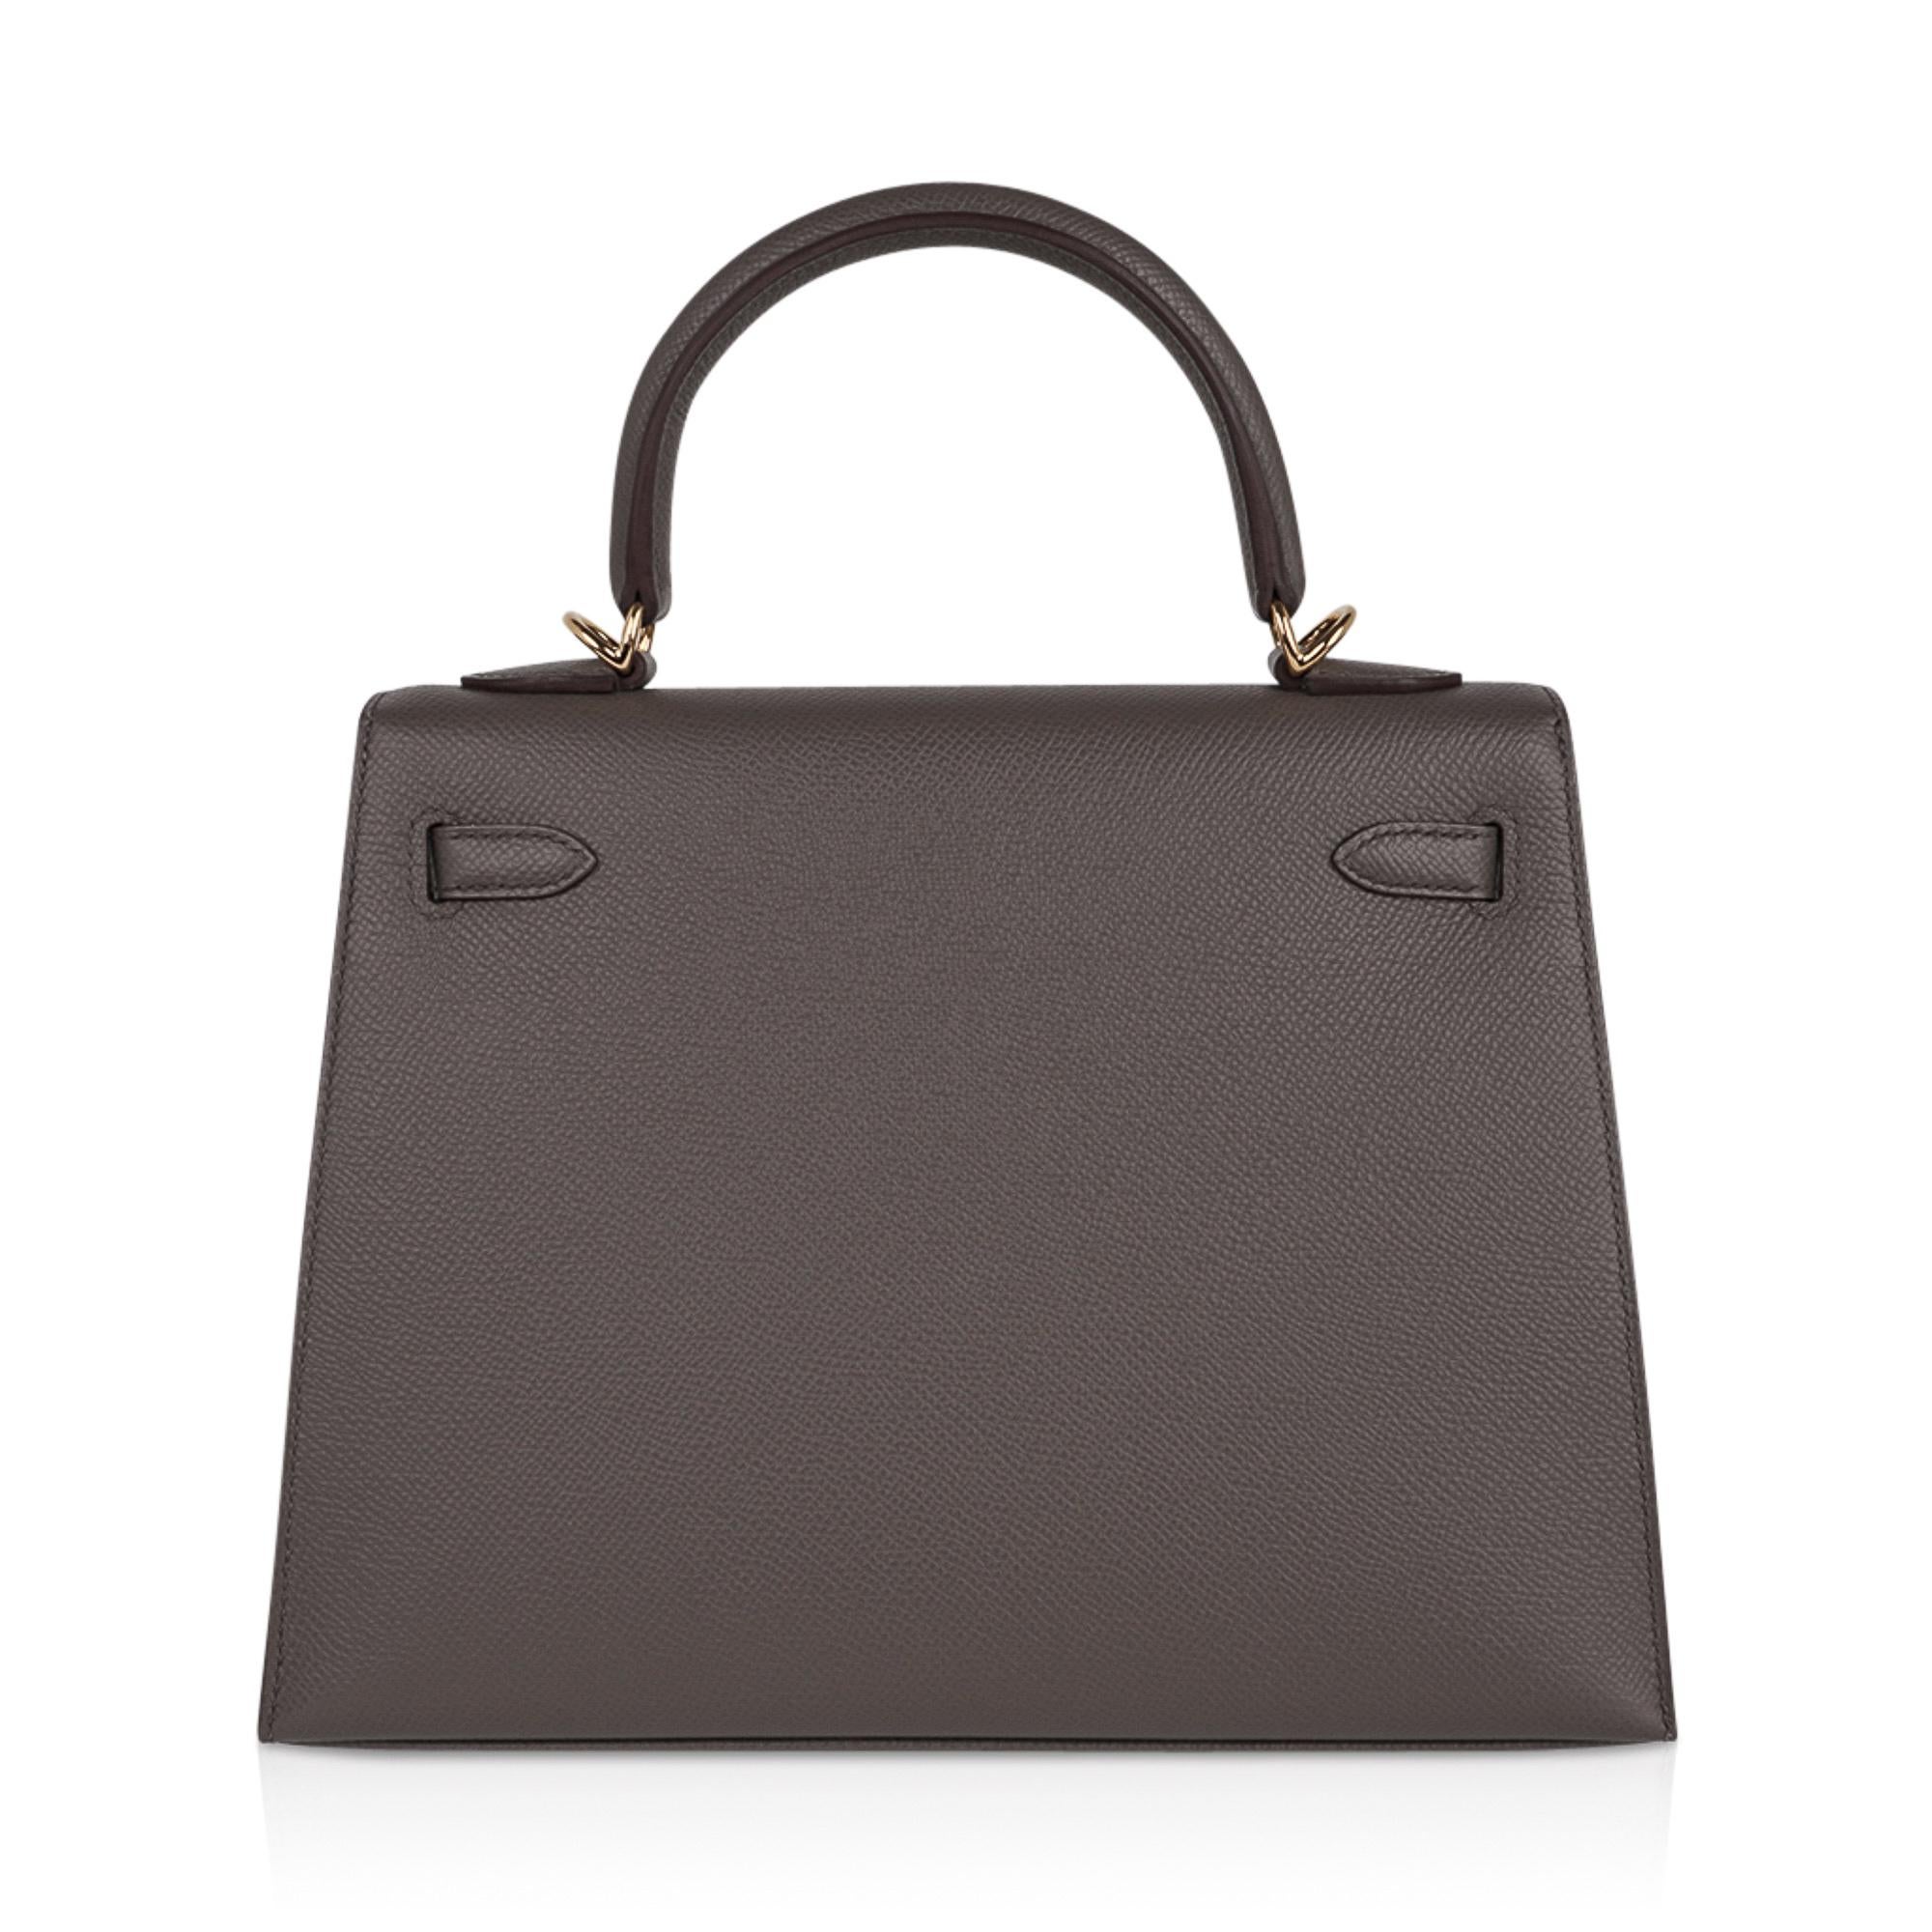 Hermes Kelly Sellier 25 Bag Etain Gold Hardware Epsom Leather New 3